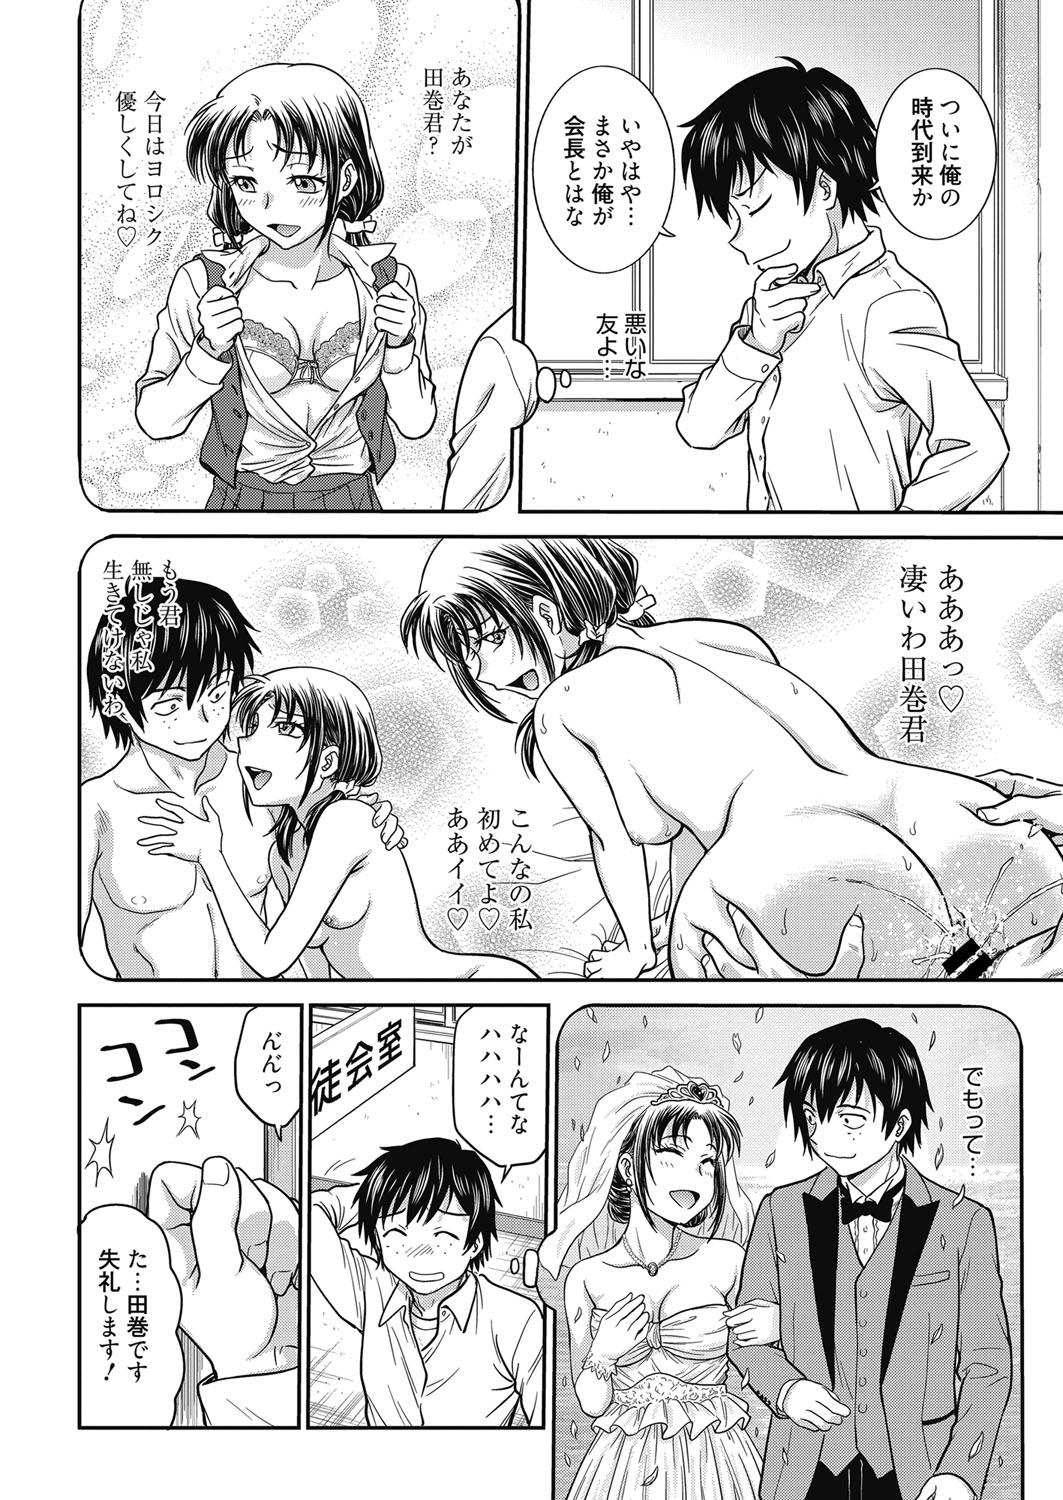 Safadinha Web Manga Bangaichi Vol. 24 Cheat - Page 5